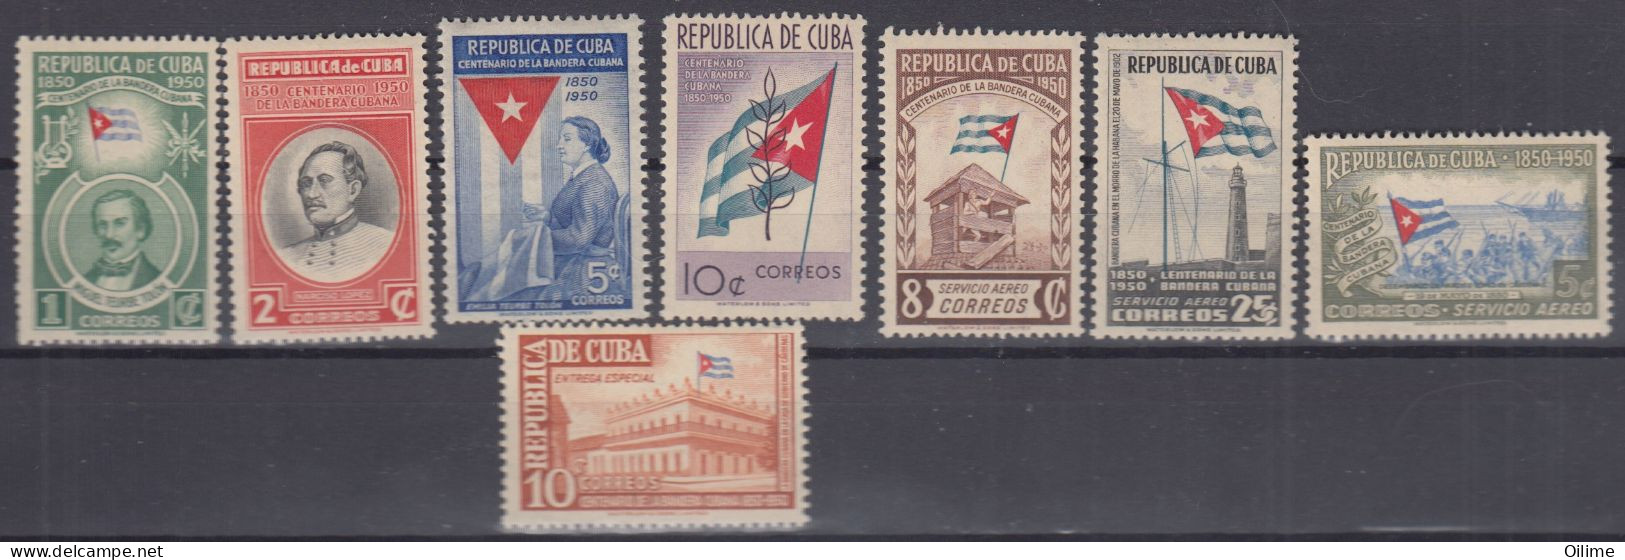 CUBA 1951. CENTENARIO DE LA BANDERA CUBANA. MNH. EDIFIL 445/52  FLAG - Ungebraucht